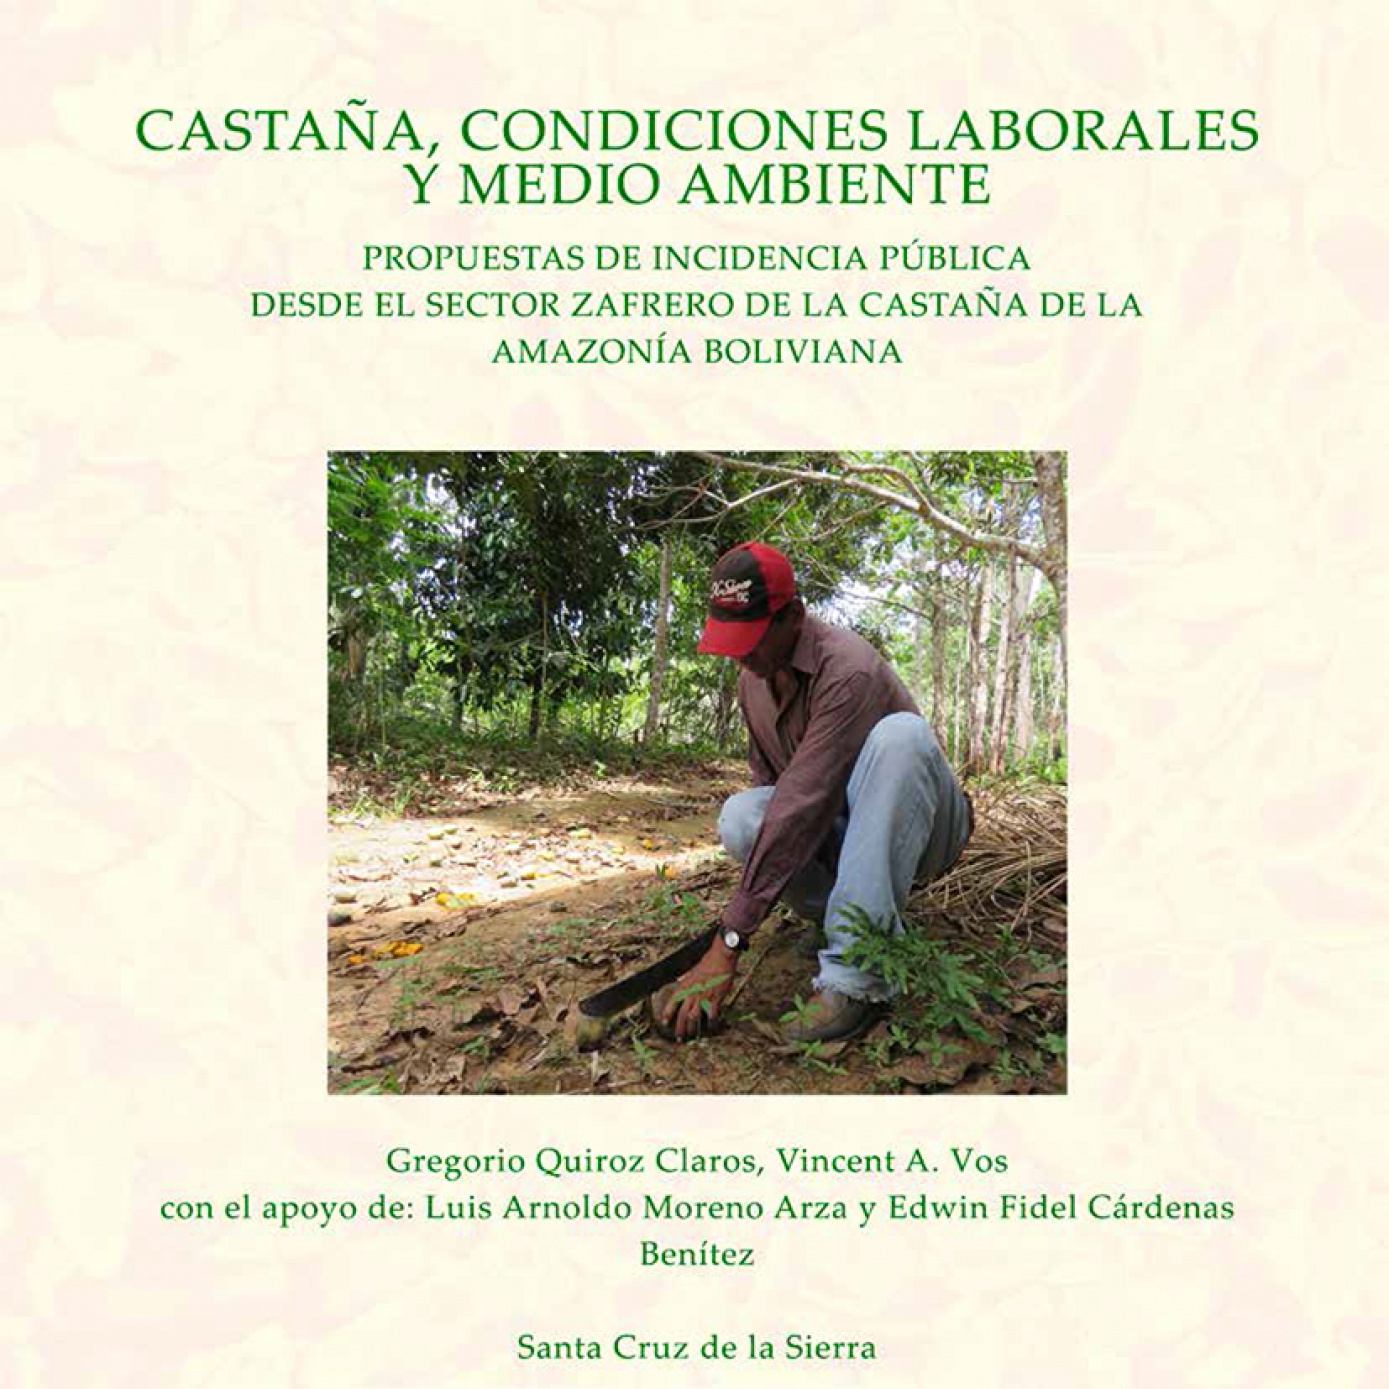 CIPCA publica la investigación  “Castaña, condiciones laborales y medio ambiente” con propuestas de incidencia pública